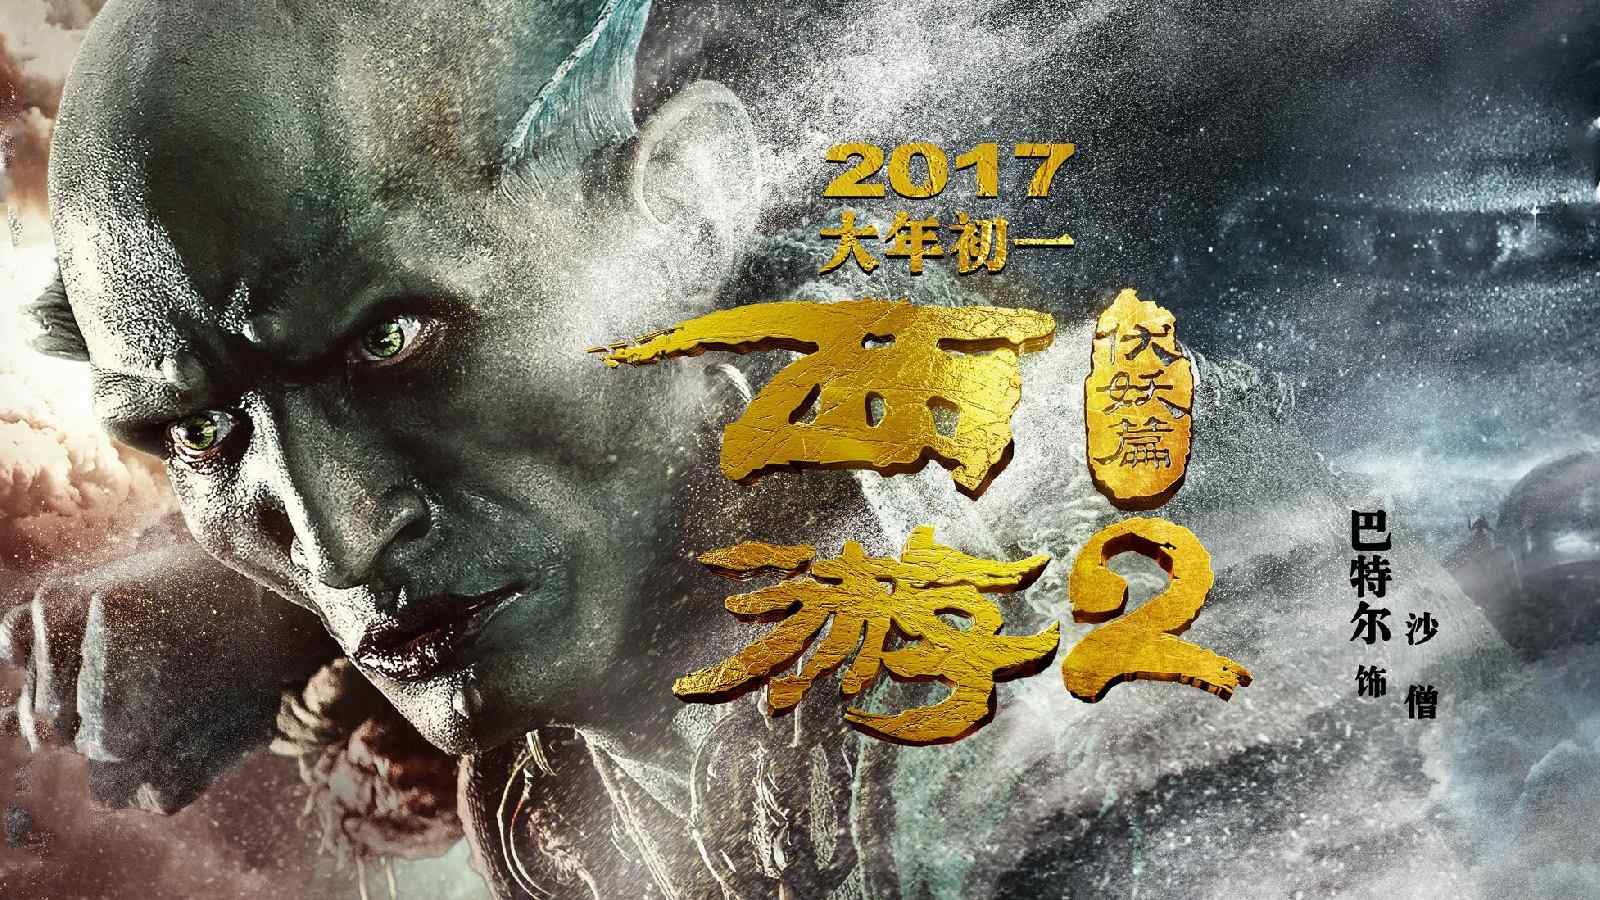 《西游伏妖篇》曝新海报、剧照 造型独特迥异_www.3dmgame.com